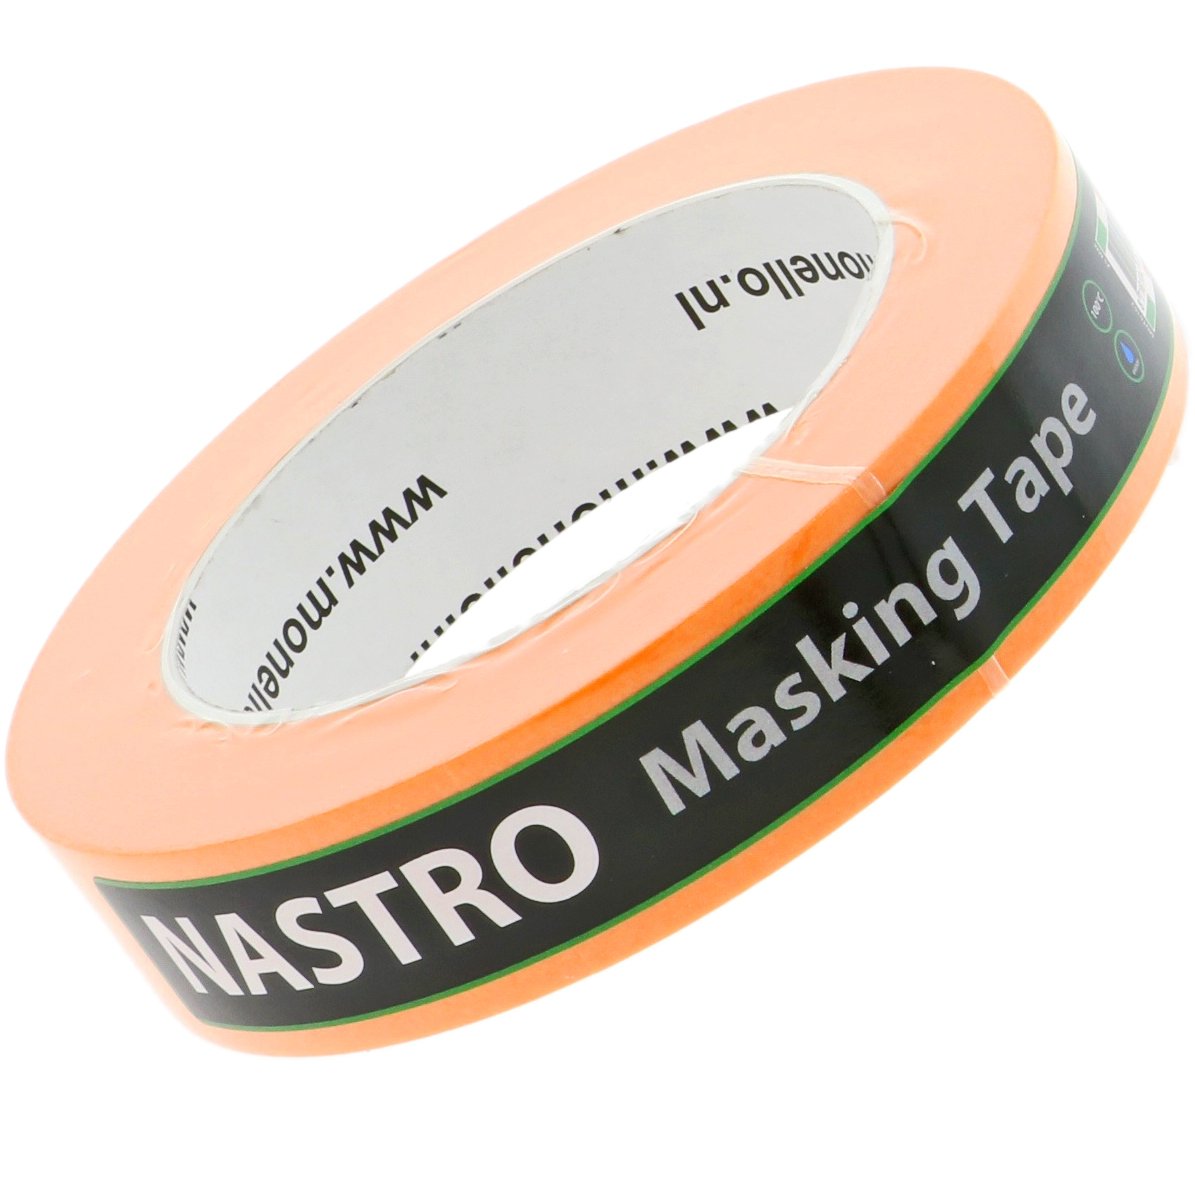 Nastro Masking Tape 30mm